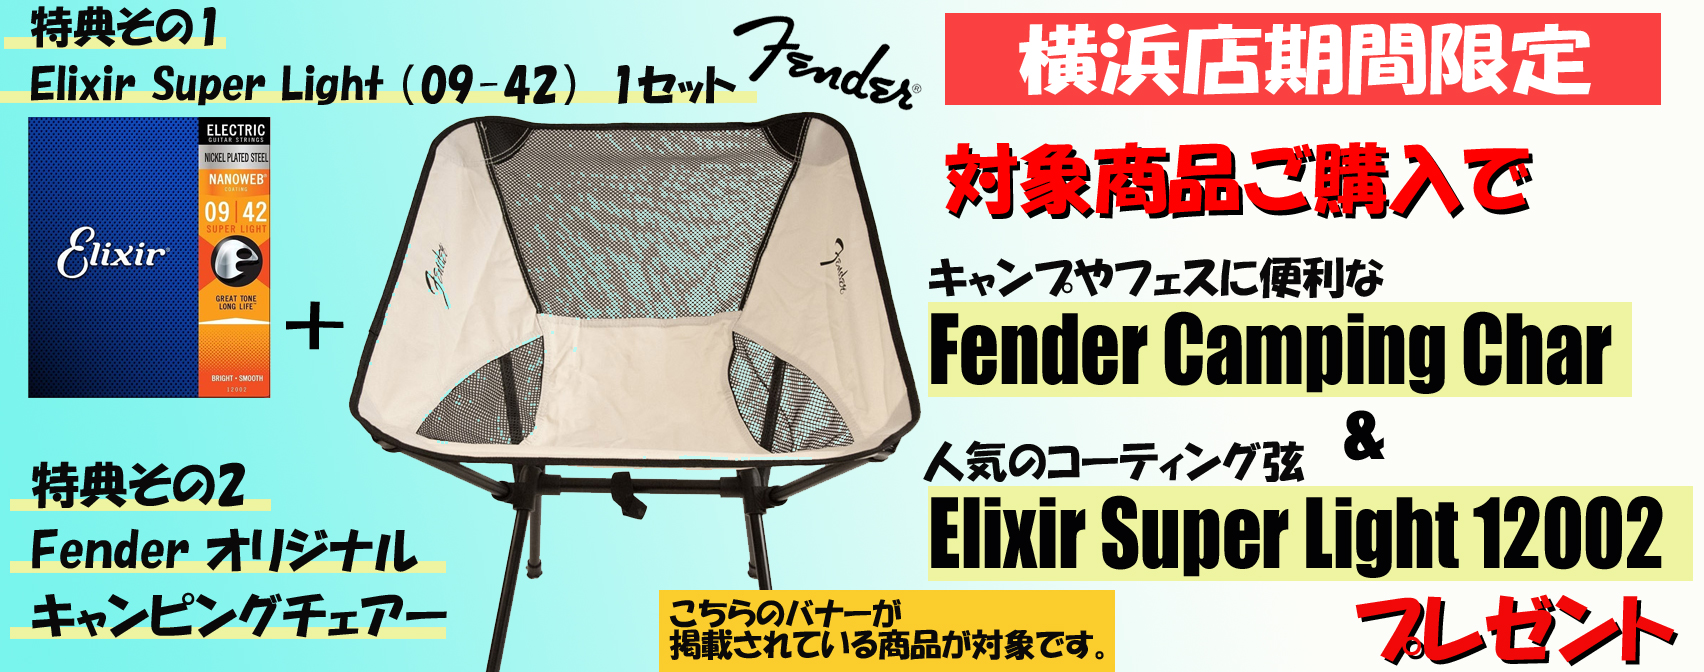 新品フェンダーMade in Japanギターをご購入の方へ、数量限定でフェンダーキャンピングチェアとエリクサー弦をプレゼント